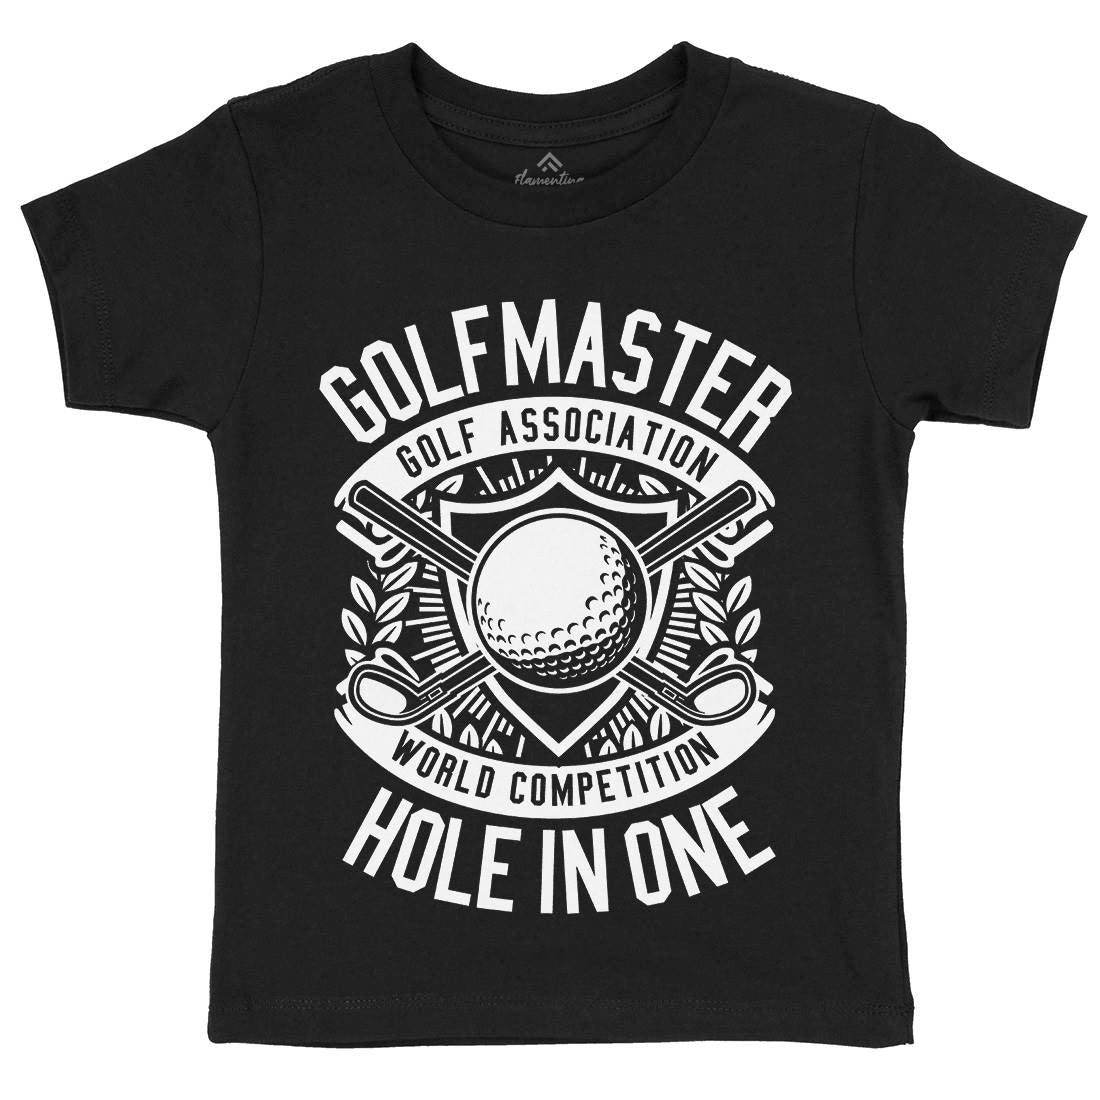 Golf Master Kids Crew Neck T-Shirt Sport B547